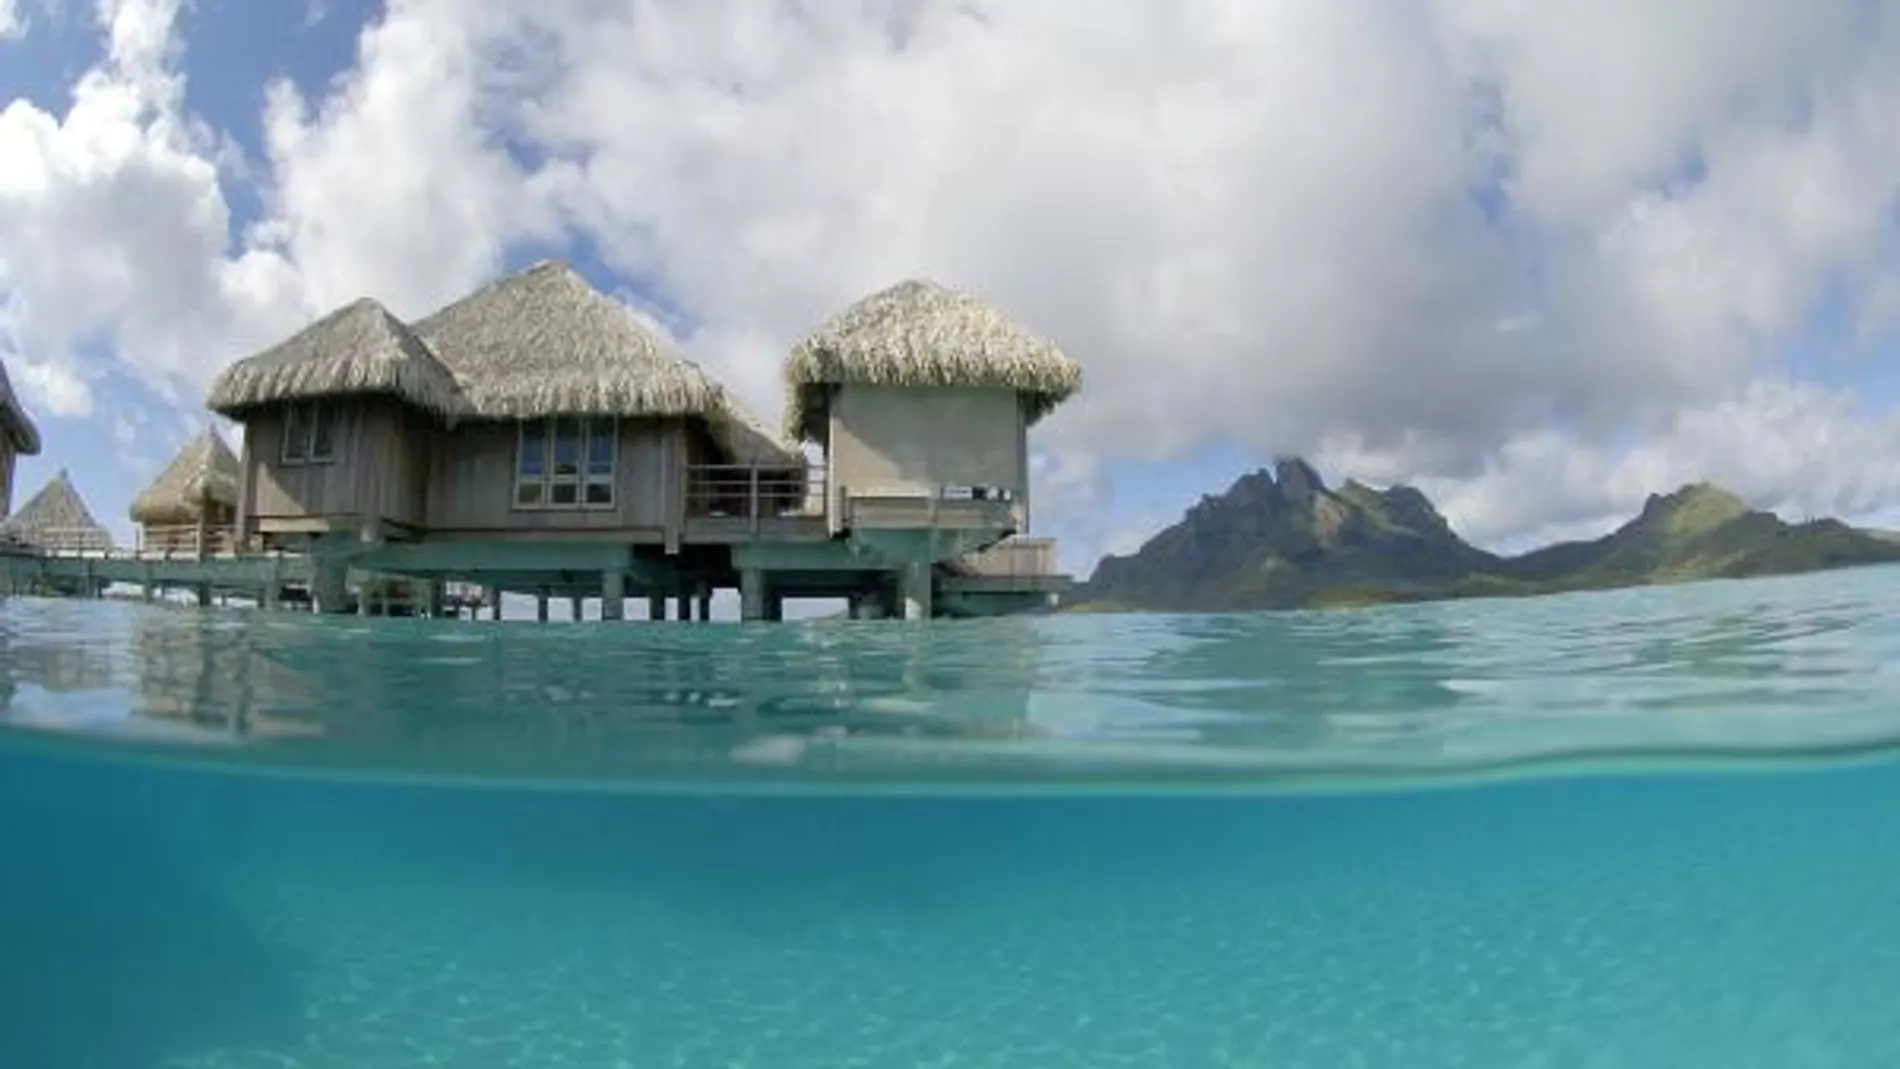 St. Regis Bora Bora, para los más exigentes